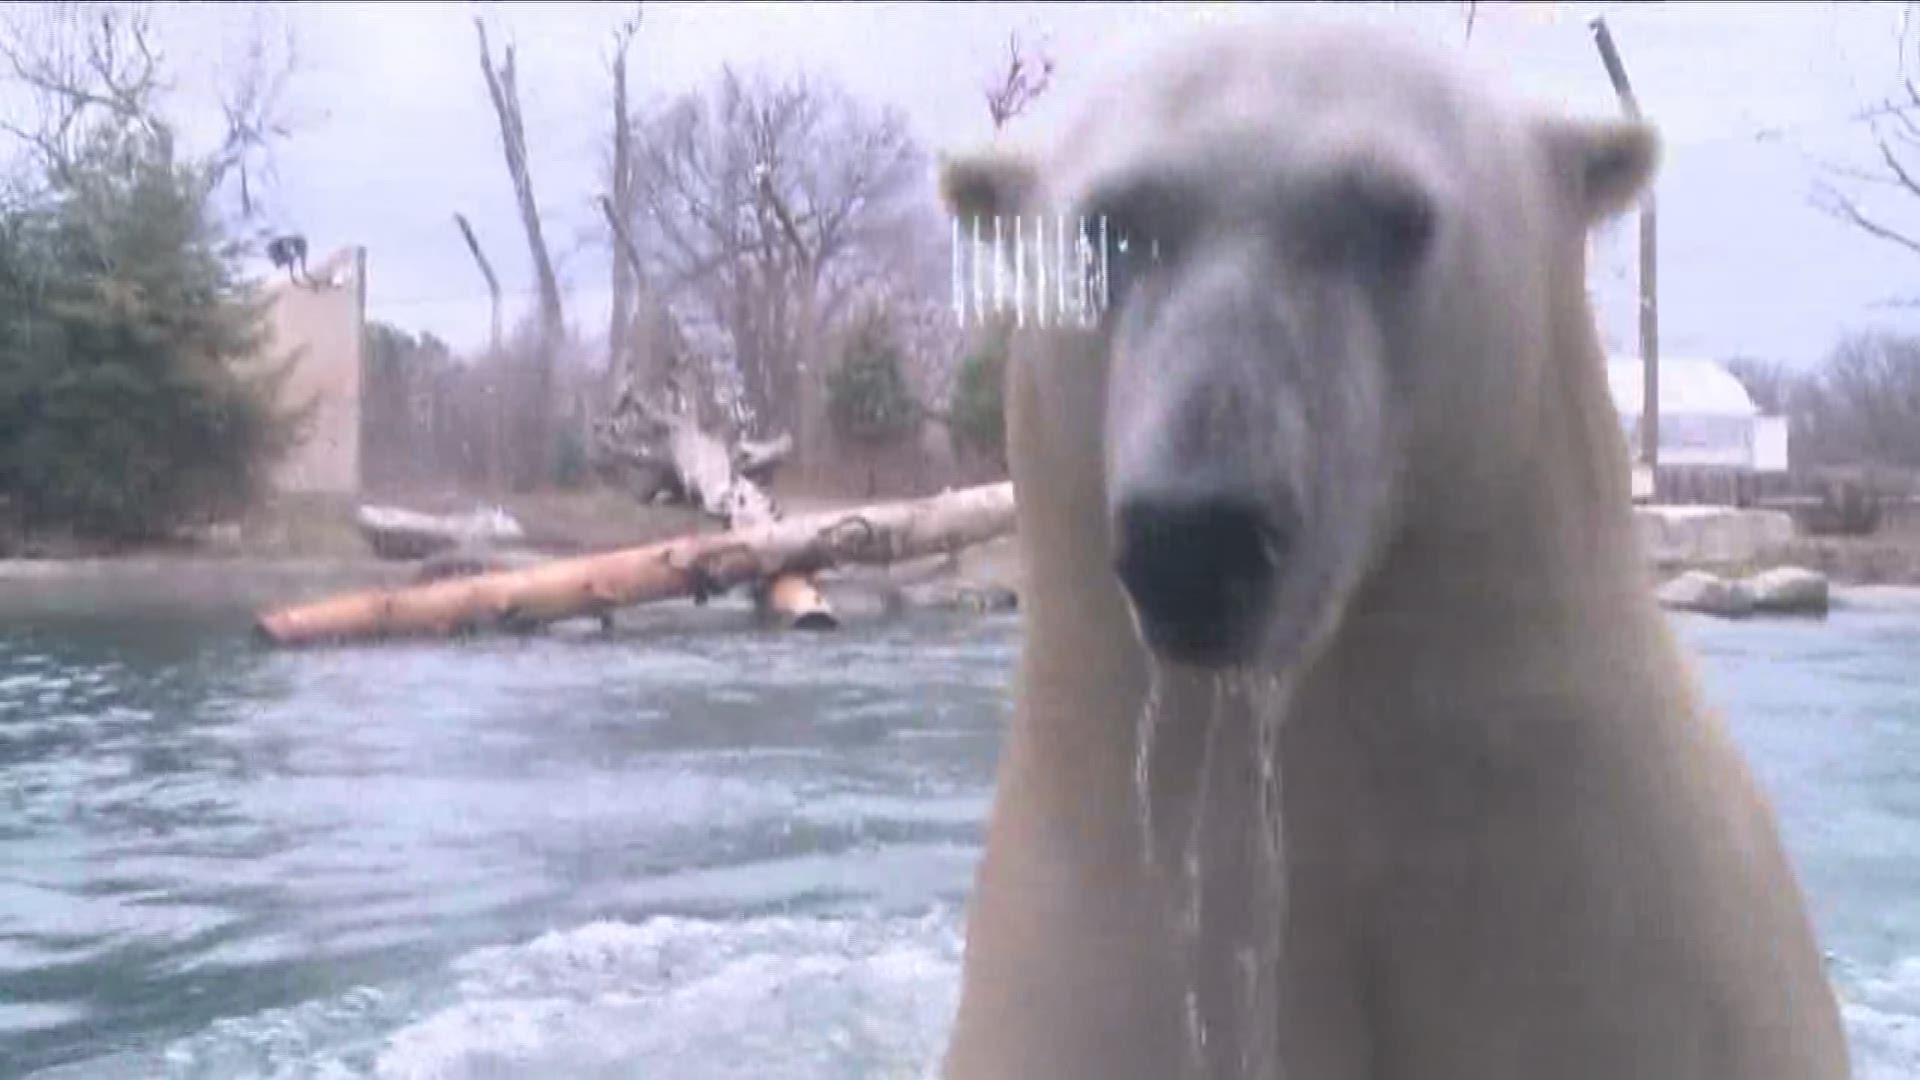 Free Parking At Zoo During Polar Bear Days